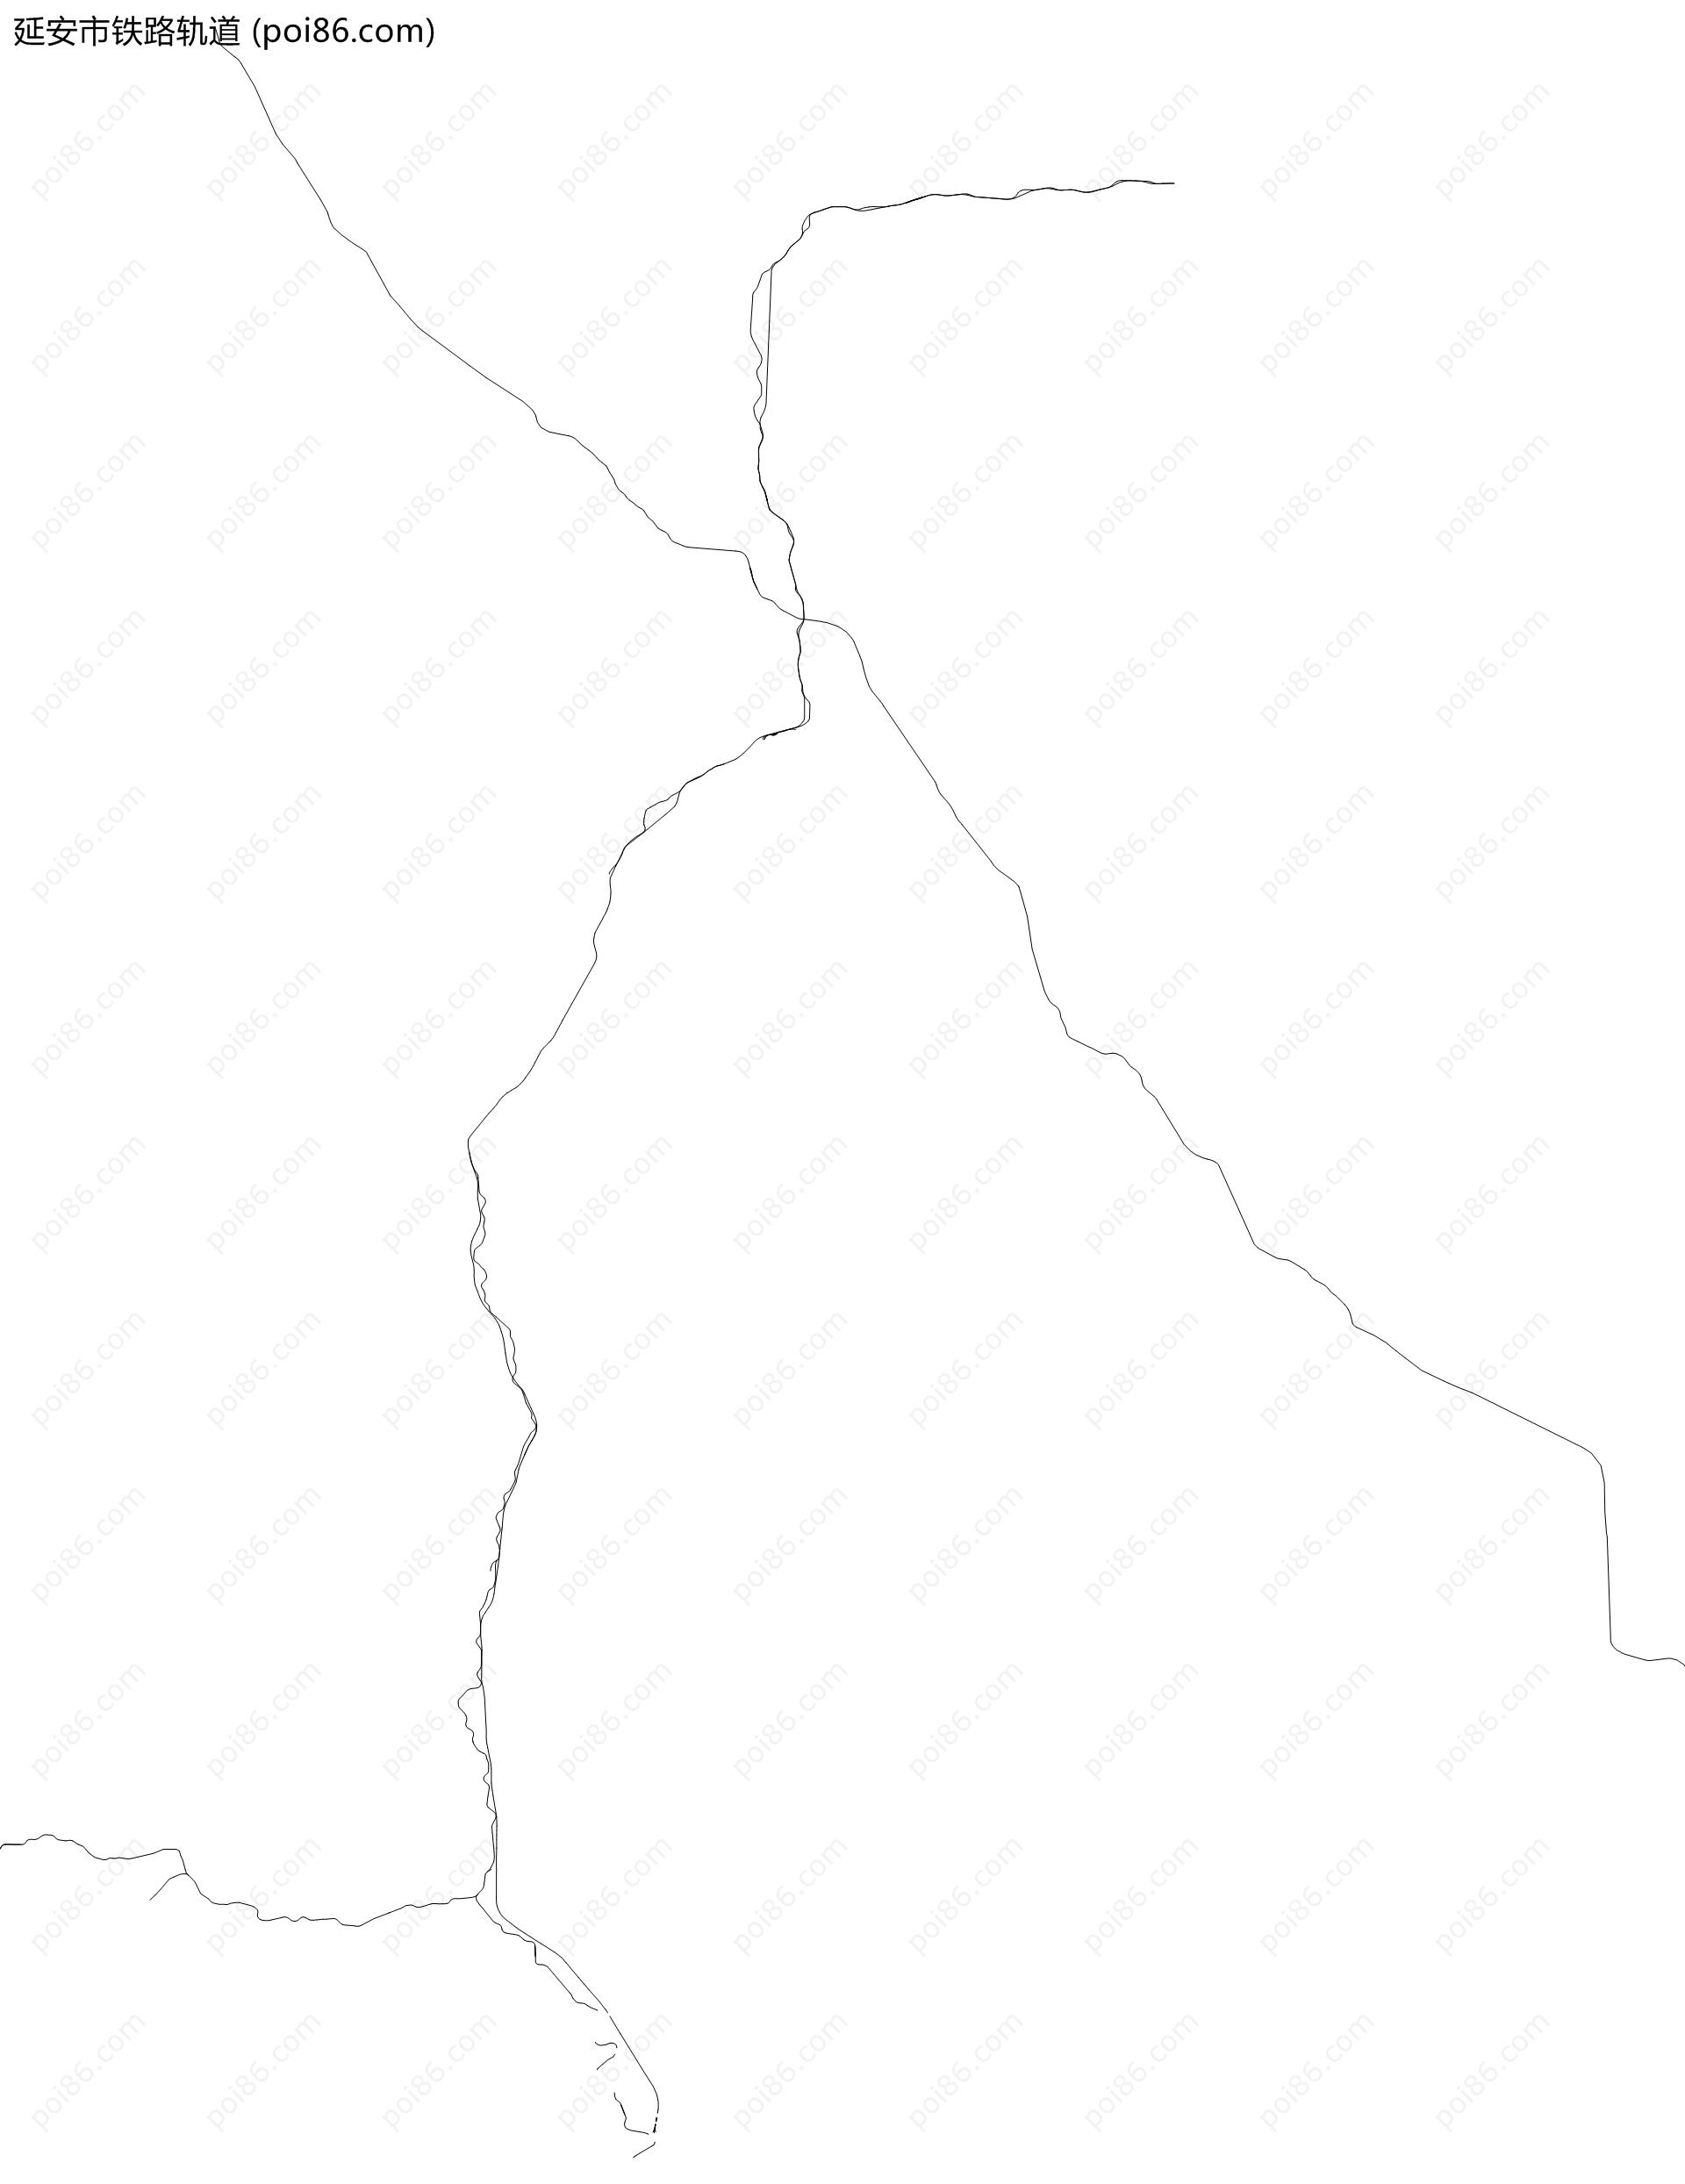 延安市铁路轨道地图